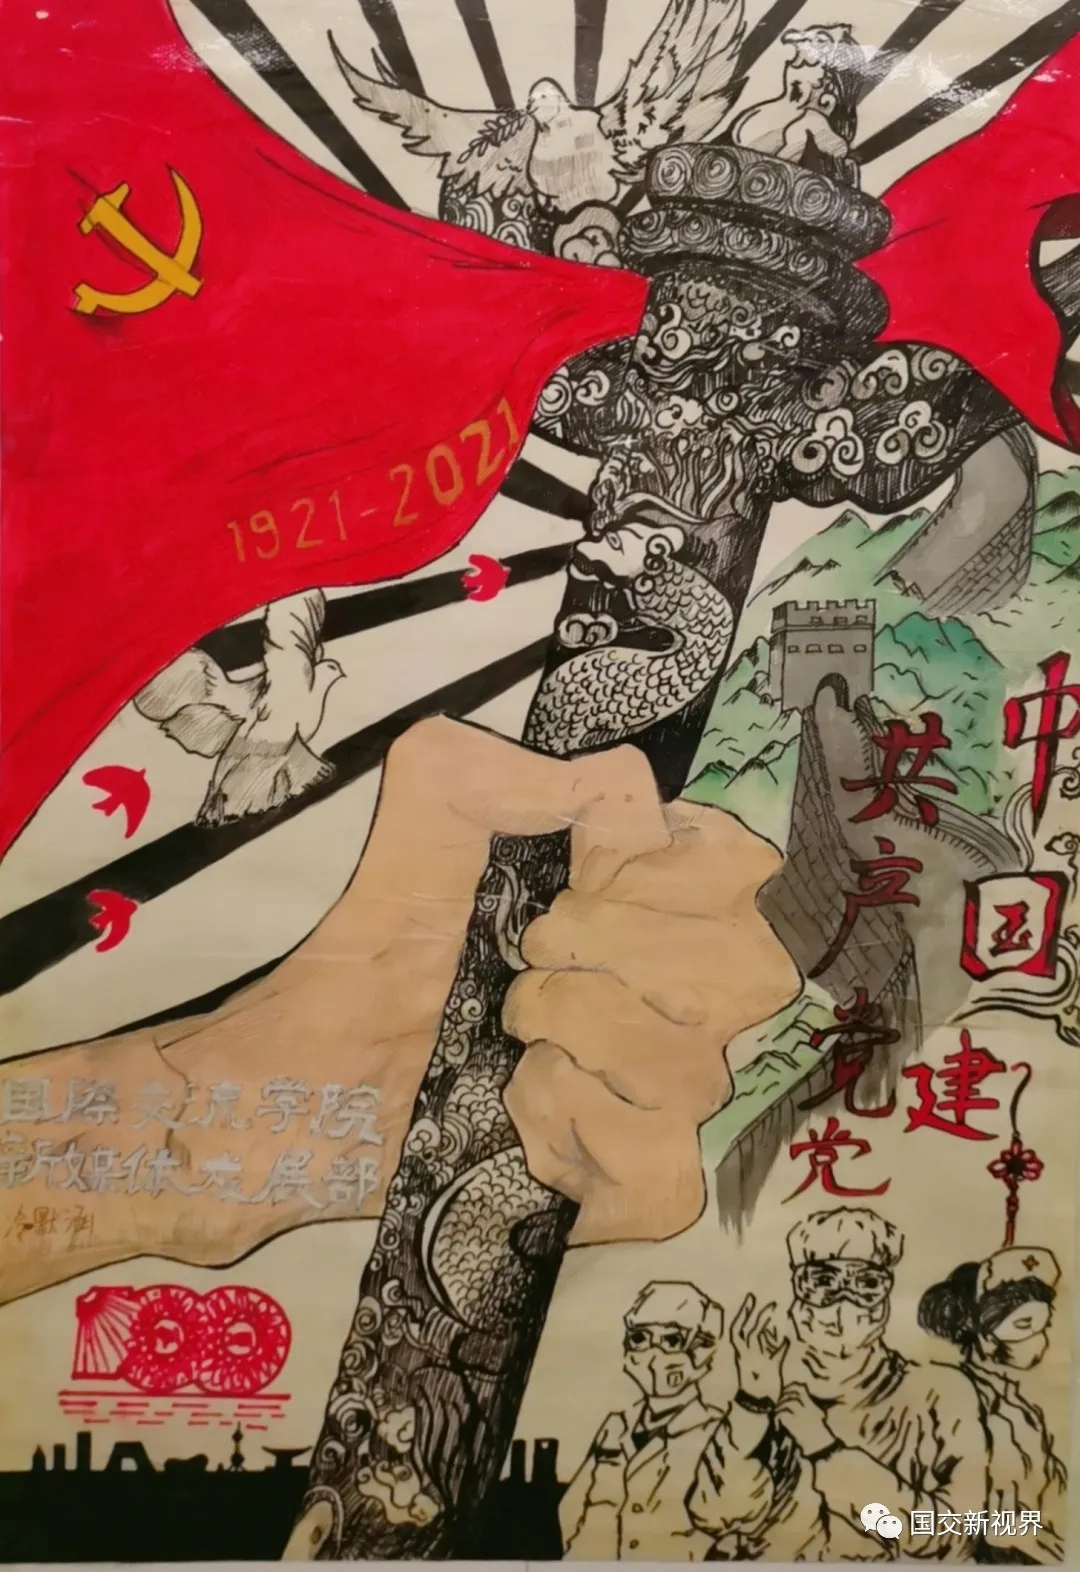 国际交流学院举办"献礼建党百年,绘画红色经典"海报展